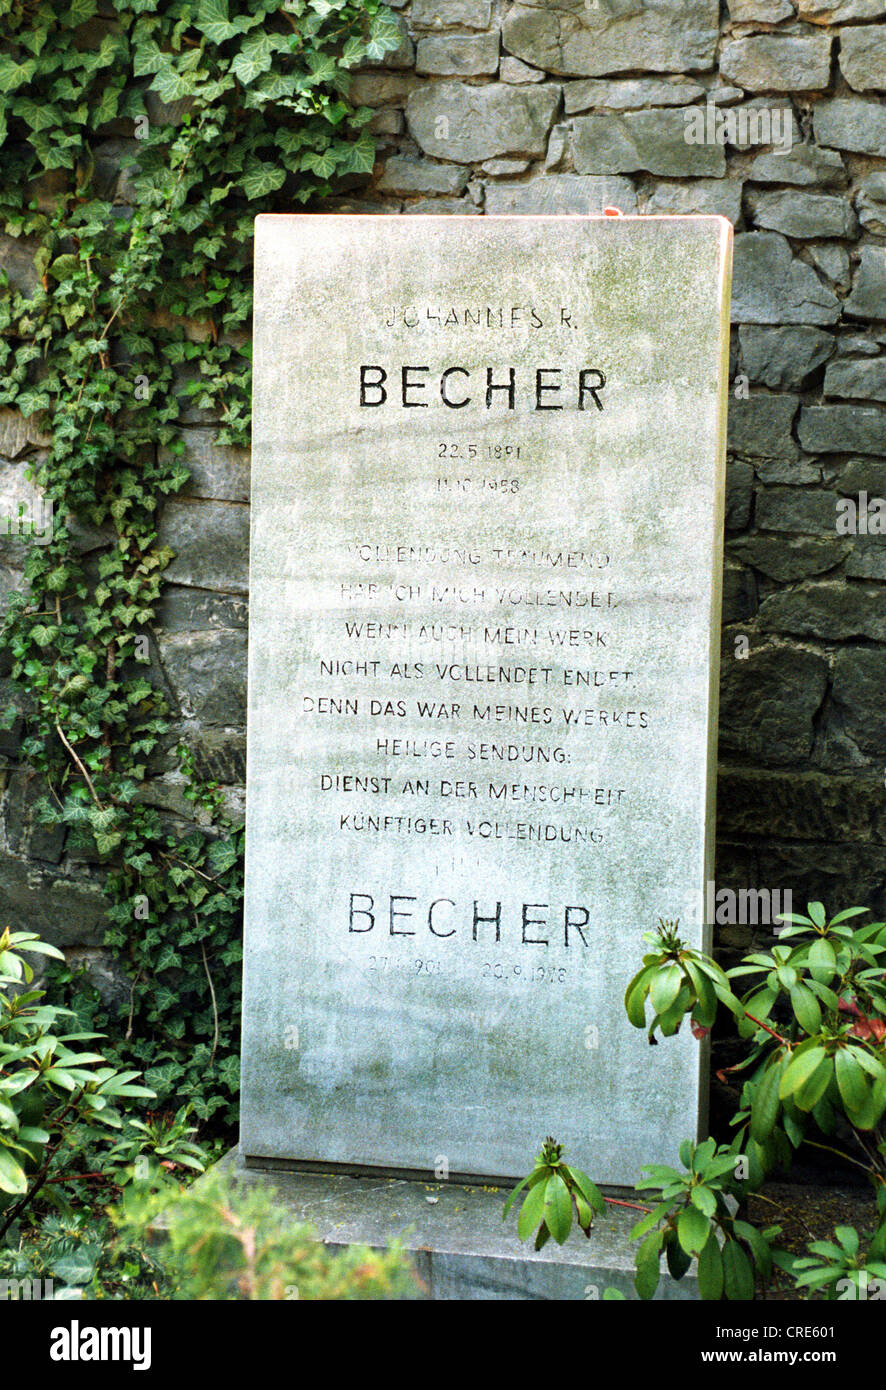 Grave stone of Johannes R. Becher on the Dorotheenstaedtischen Cemetery in Berlin, Germany Stock Photo